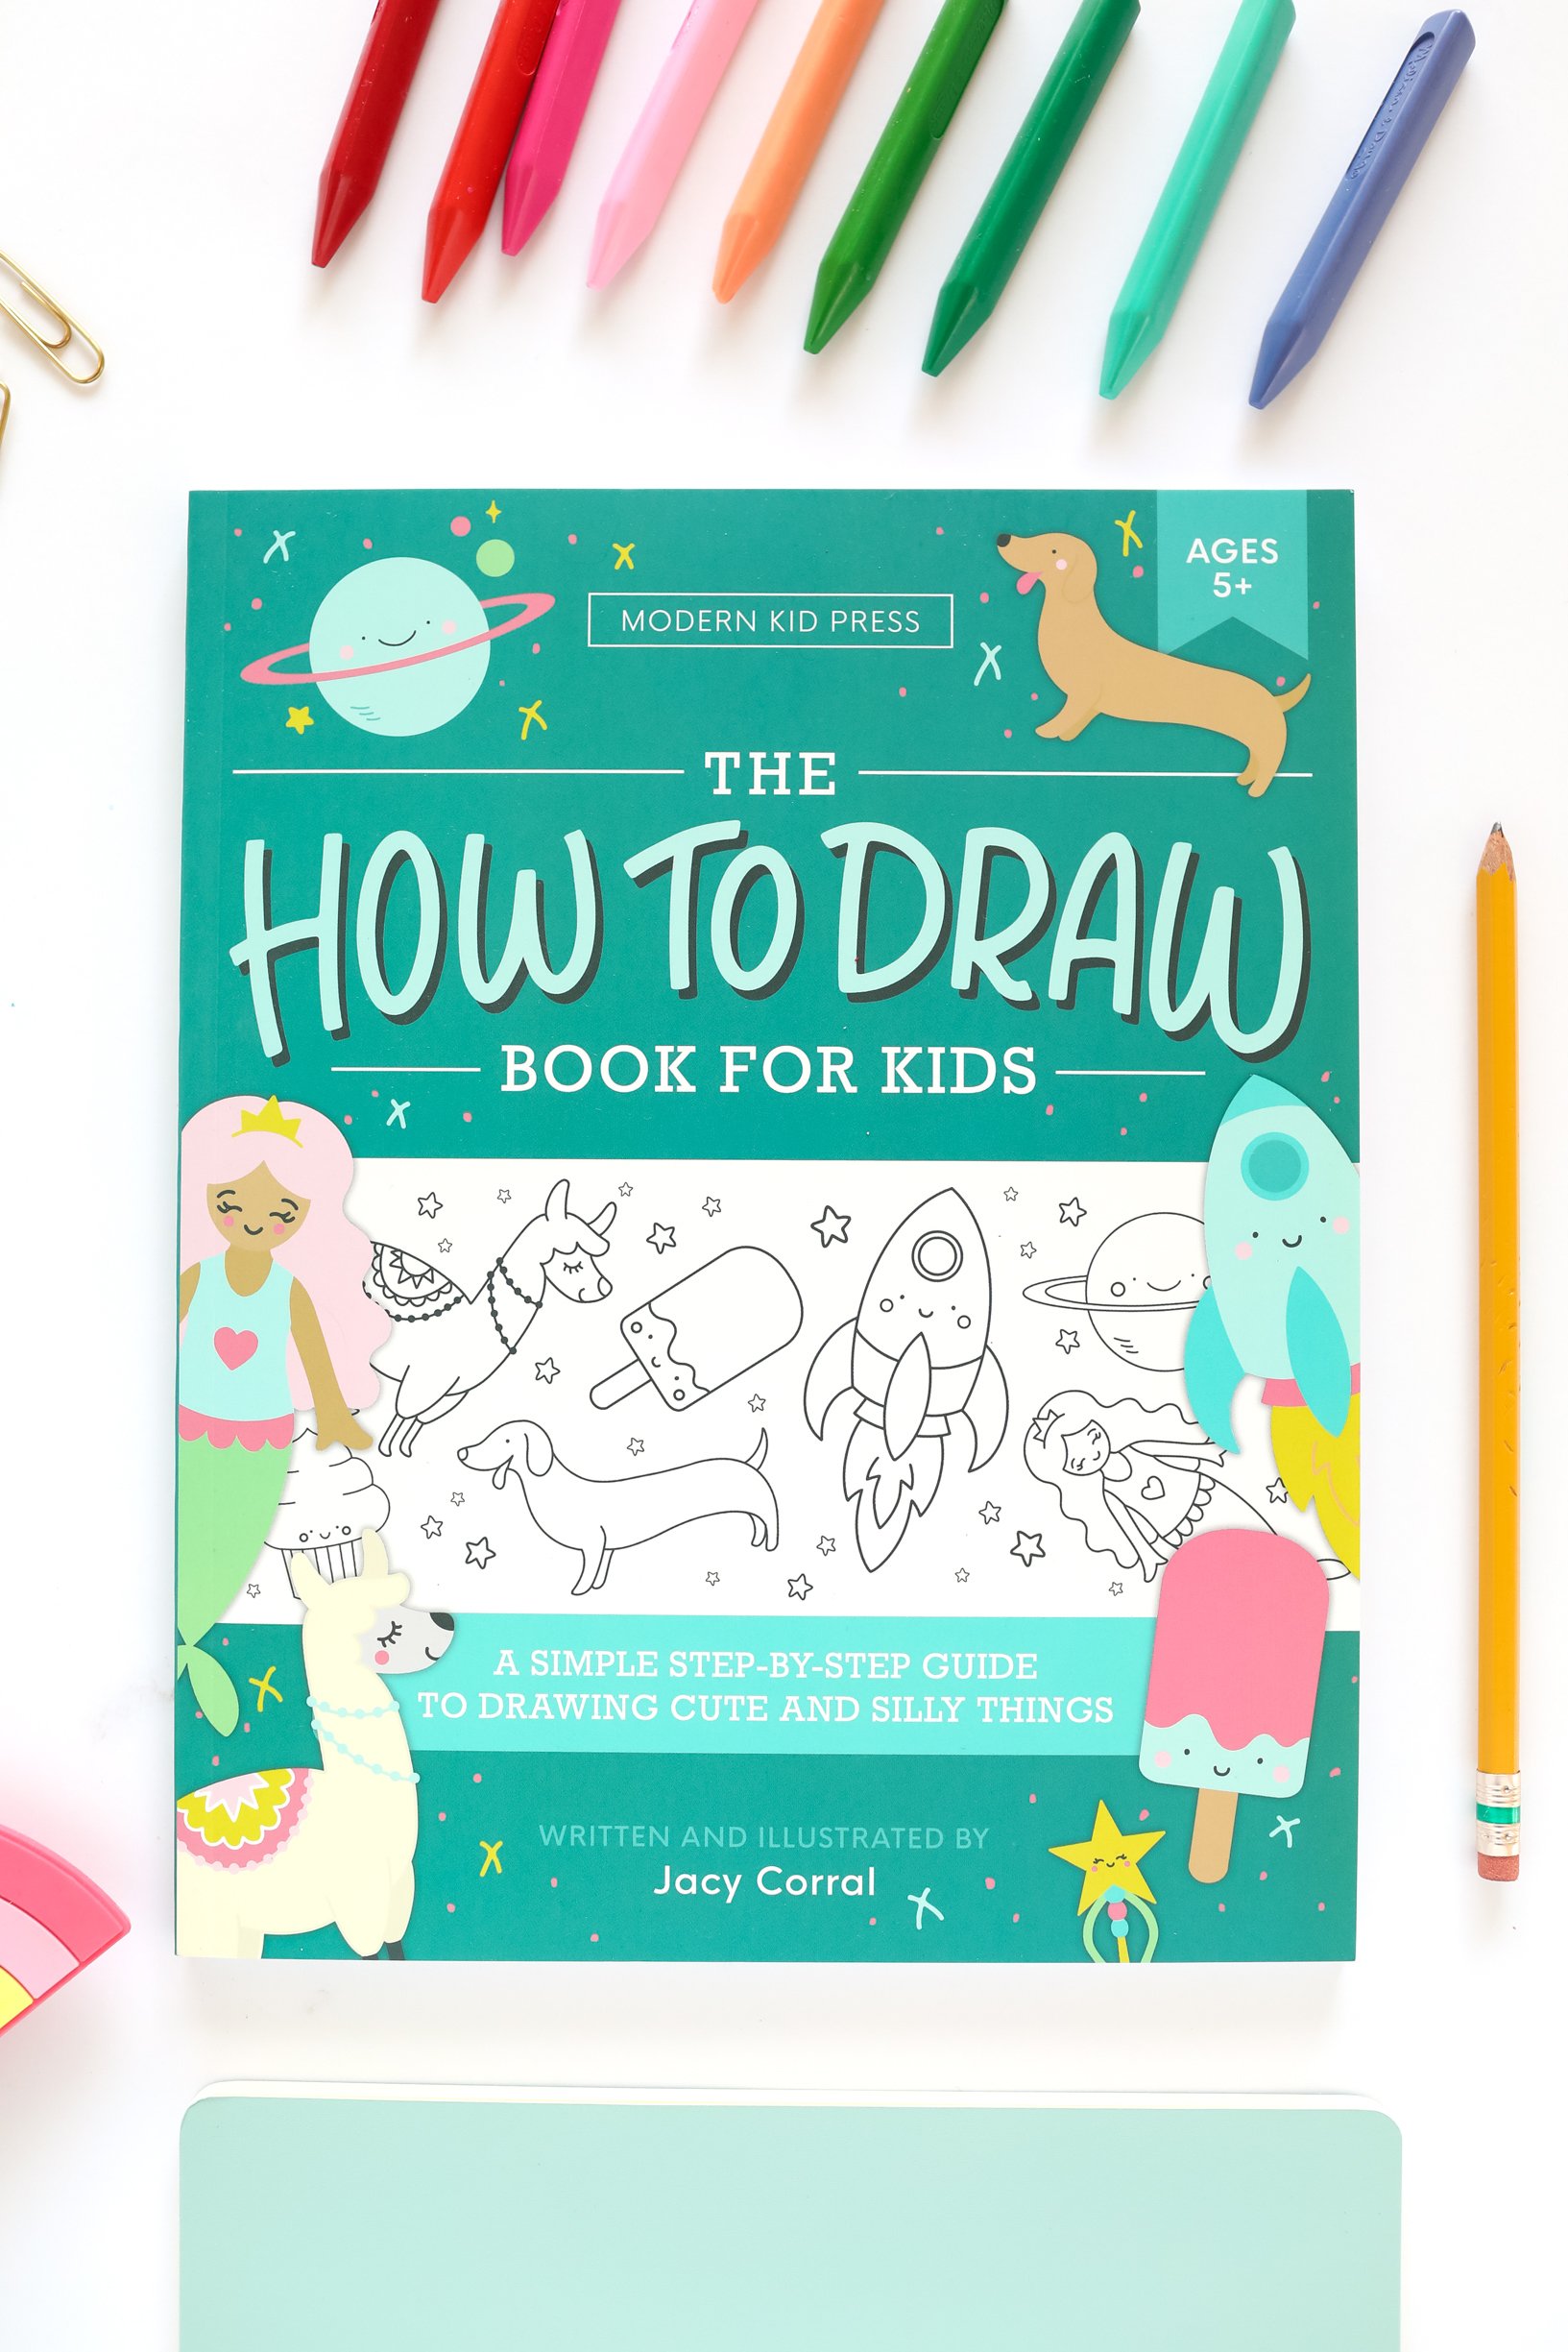 https://images.squarespace-cdn.com/content/v1/62fe7dff9b57d764d88b91f2/1661881610916-66UQQVK2BQ63IXJRDWAA/How+to+Draw+Kids-2.jpg